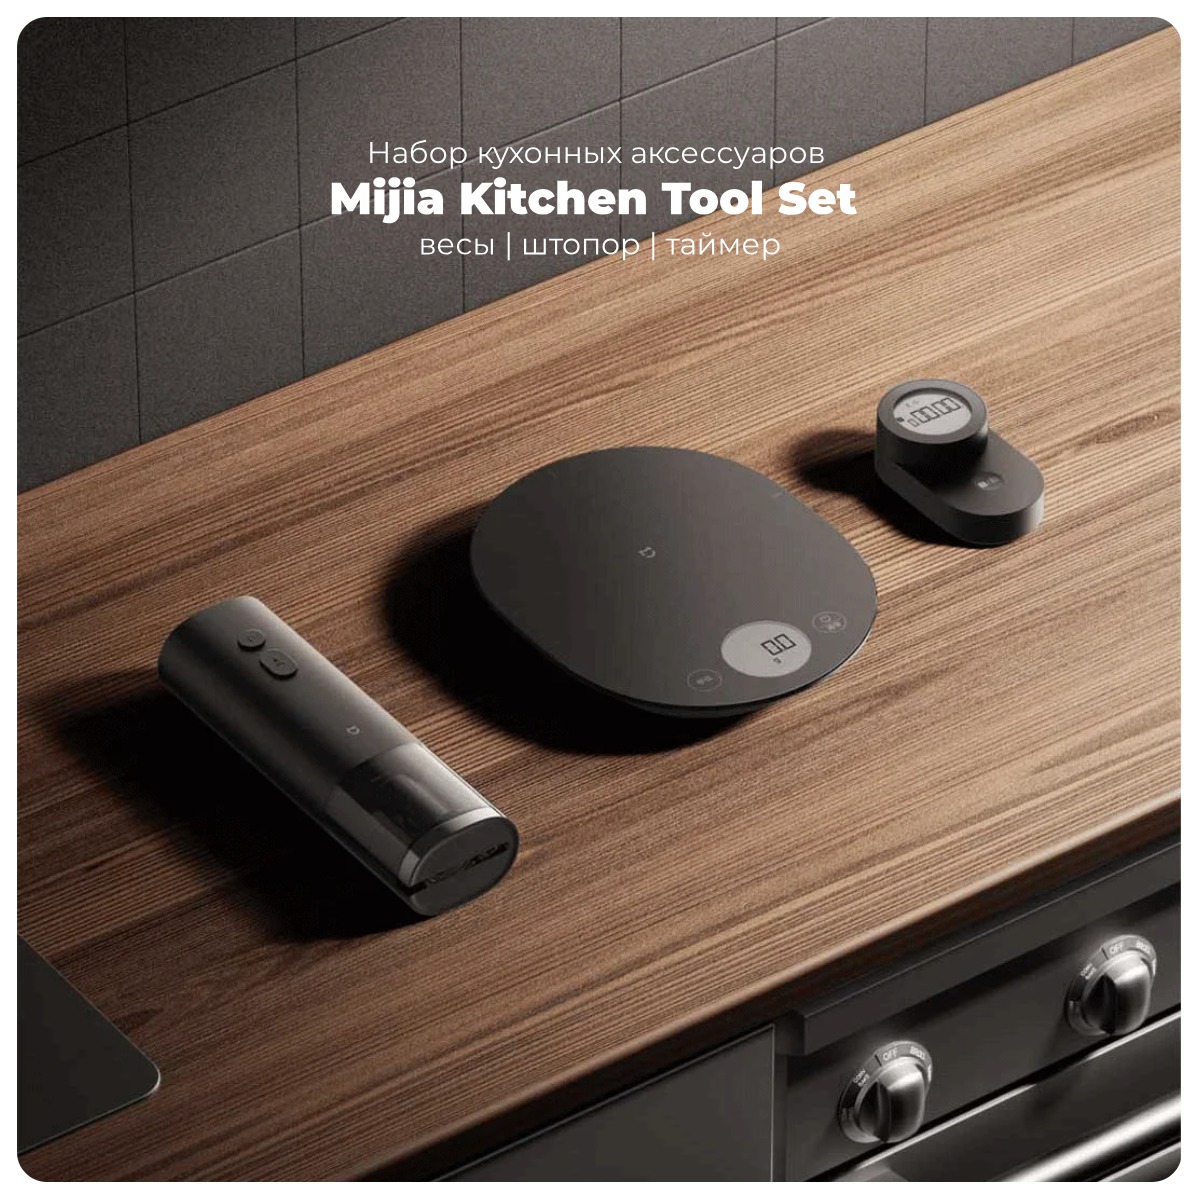 Mijia-Kitchen-Tool-Set-01